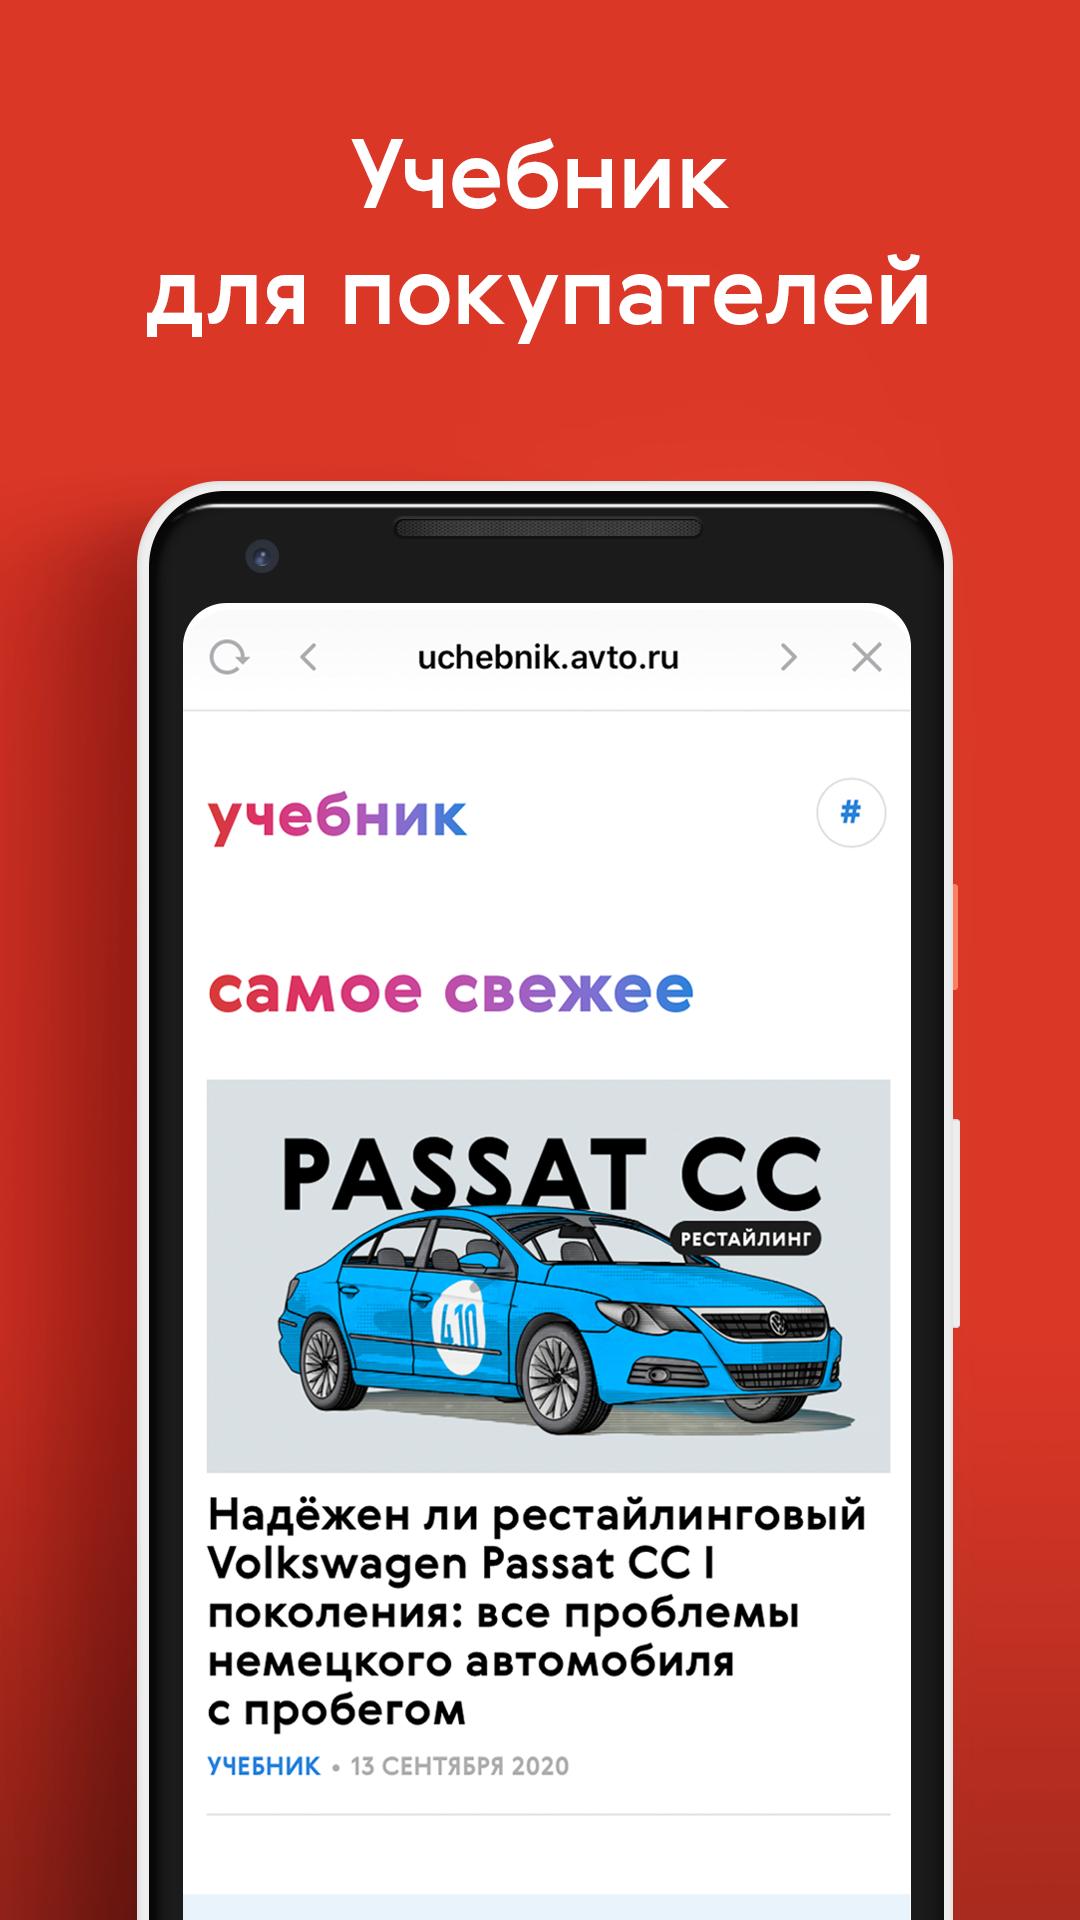 Авто.ру: купить и продать авто 7.2.1 Screenshot 8